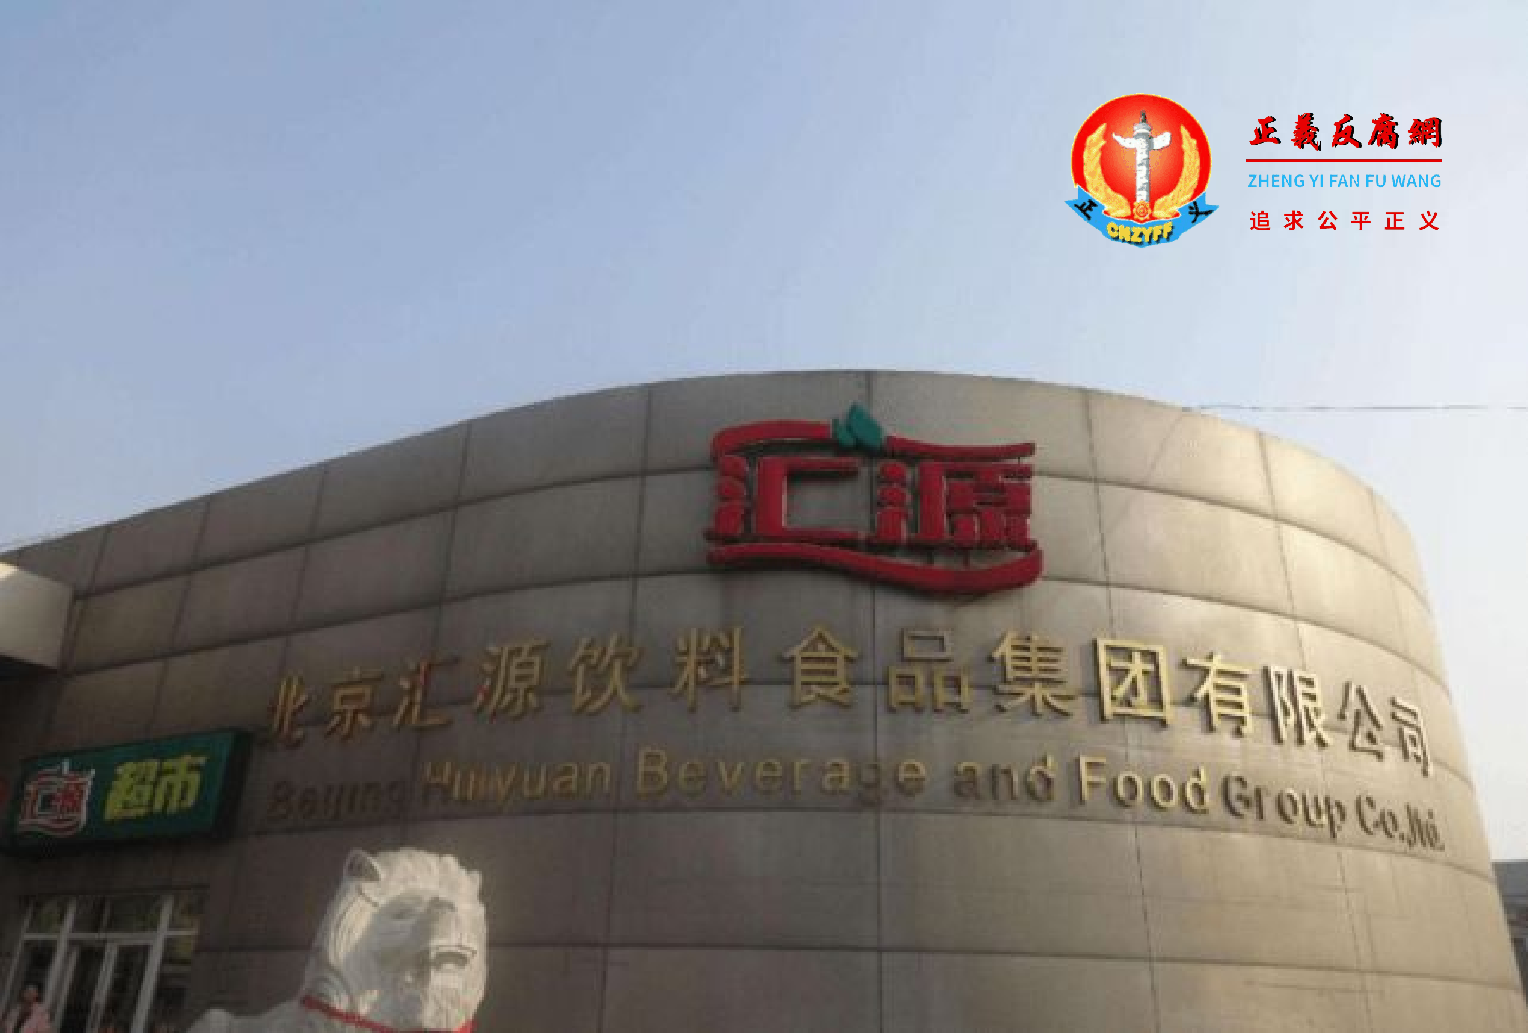 图片为北京汇源饮料食品集团有限公司。.png